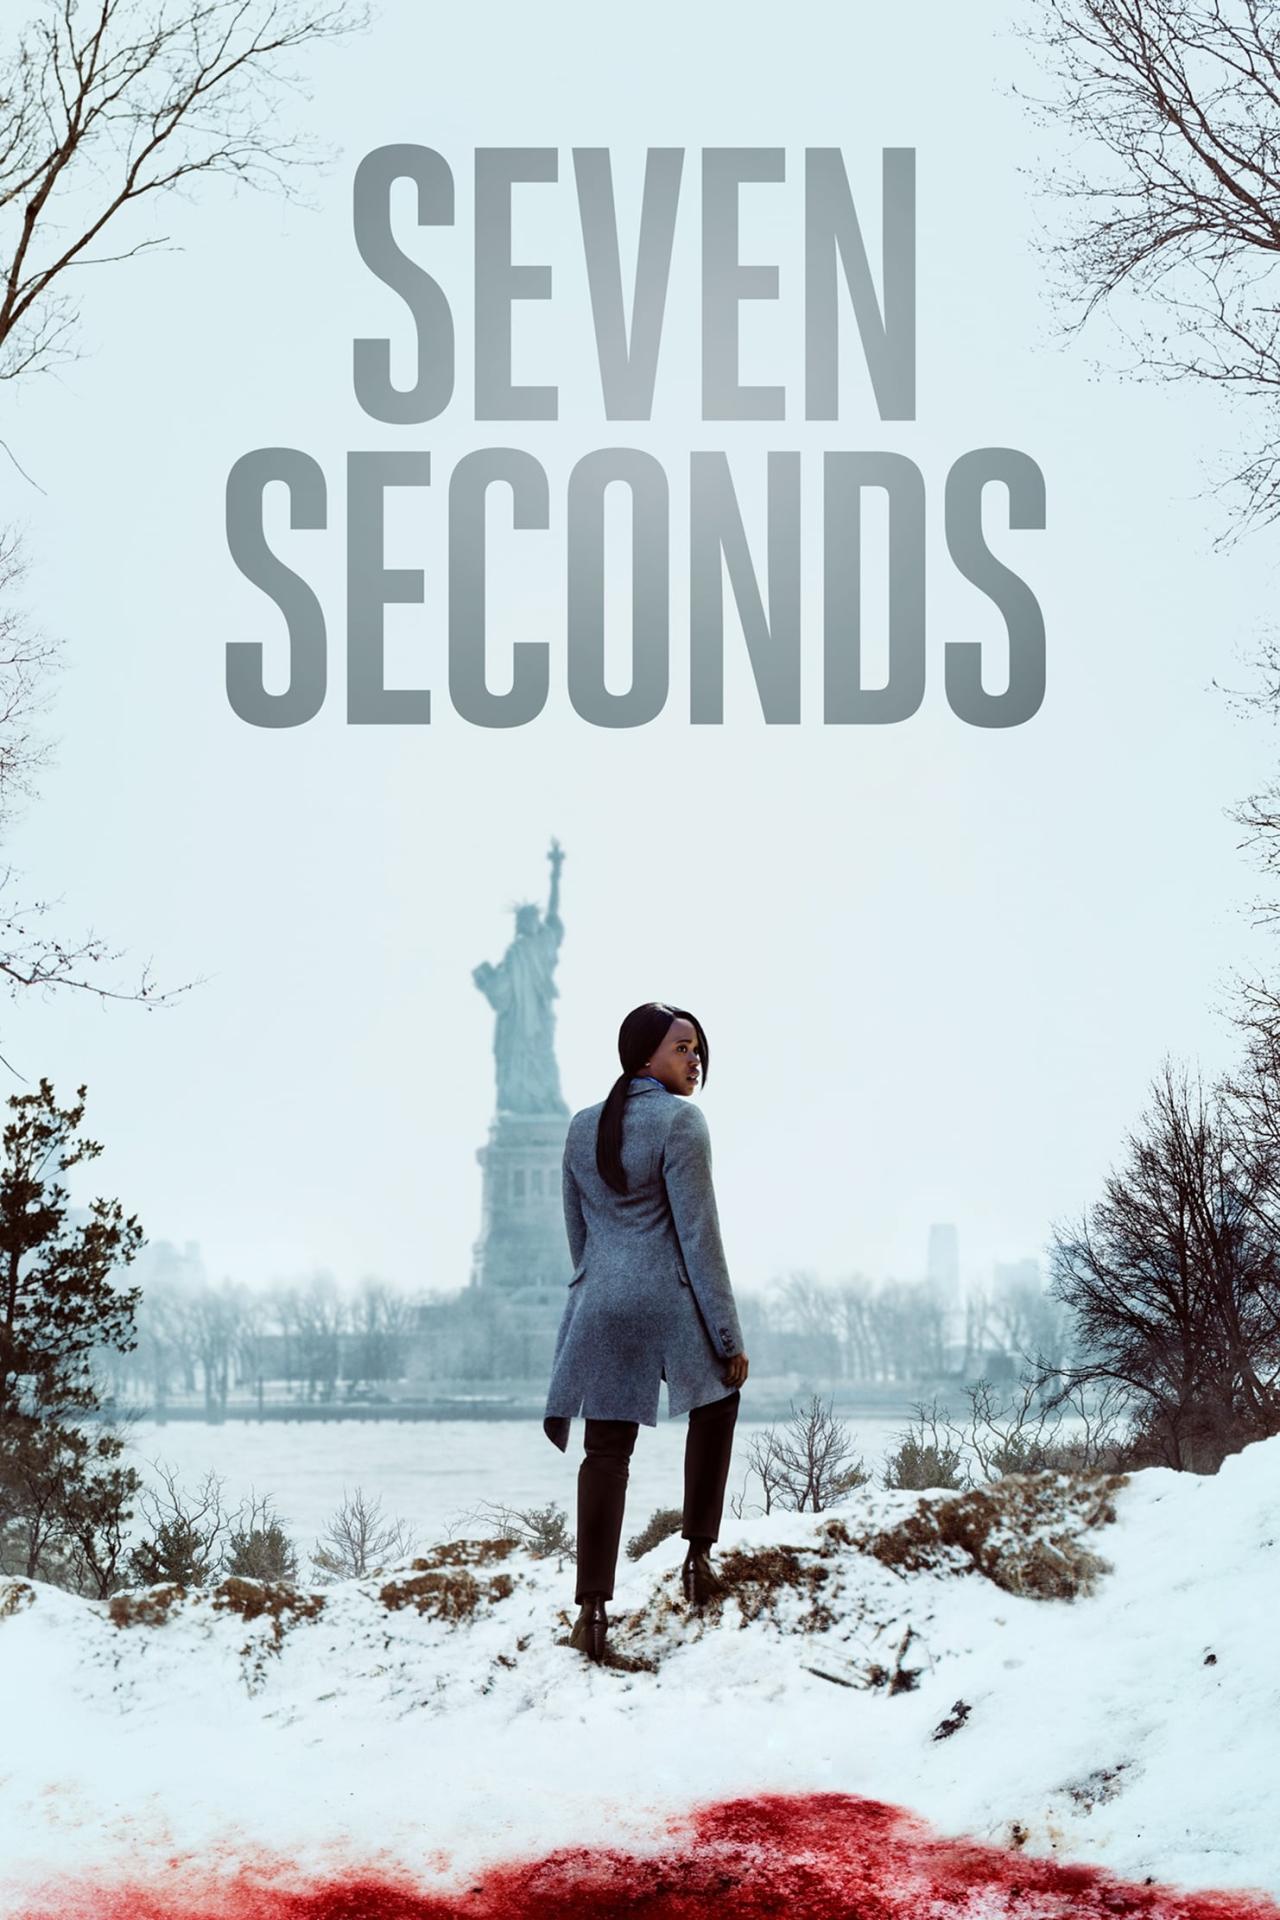 Les saisons de Seven Seconds sont-elles disponibles sur Netflix ou autre ?